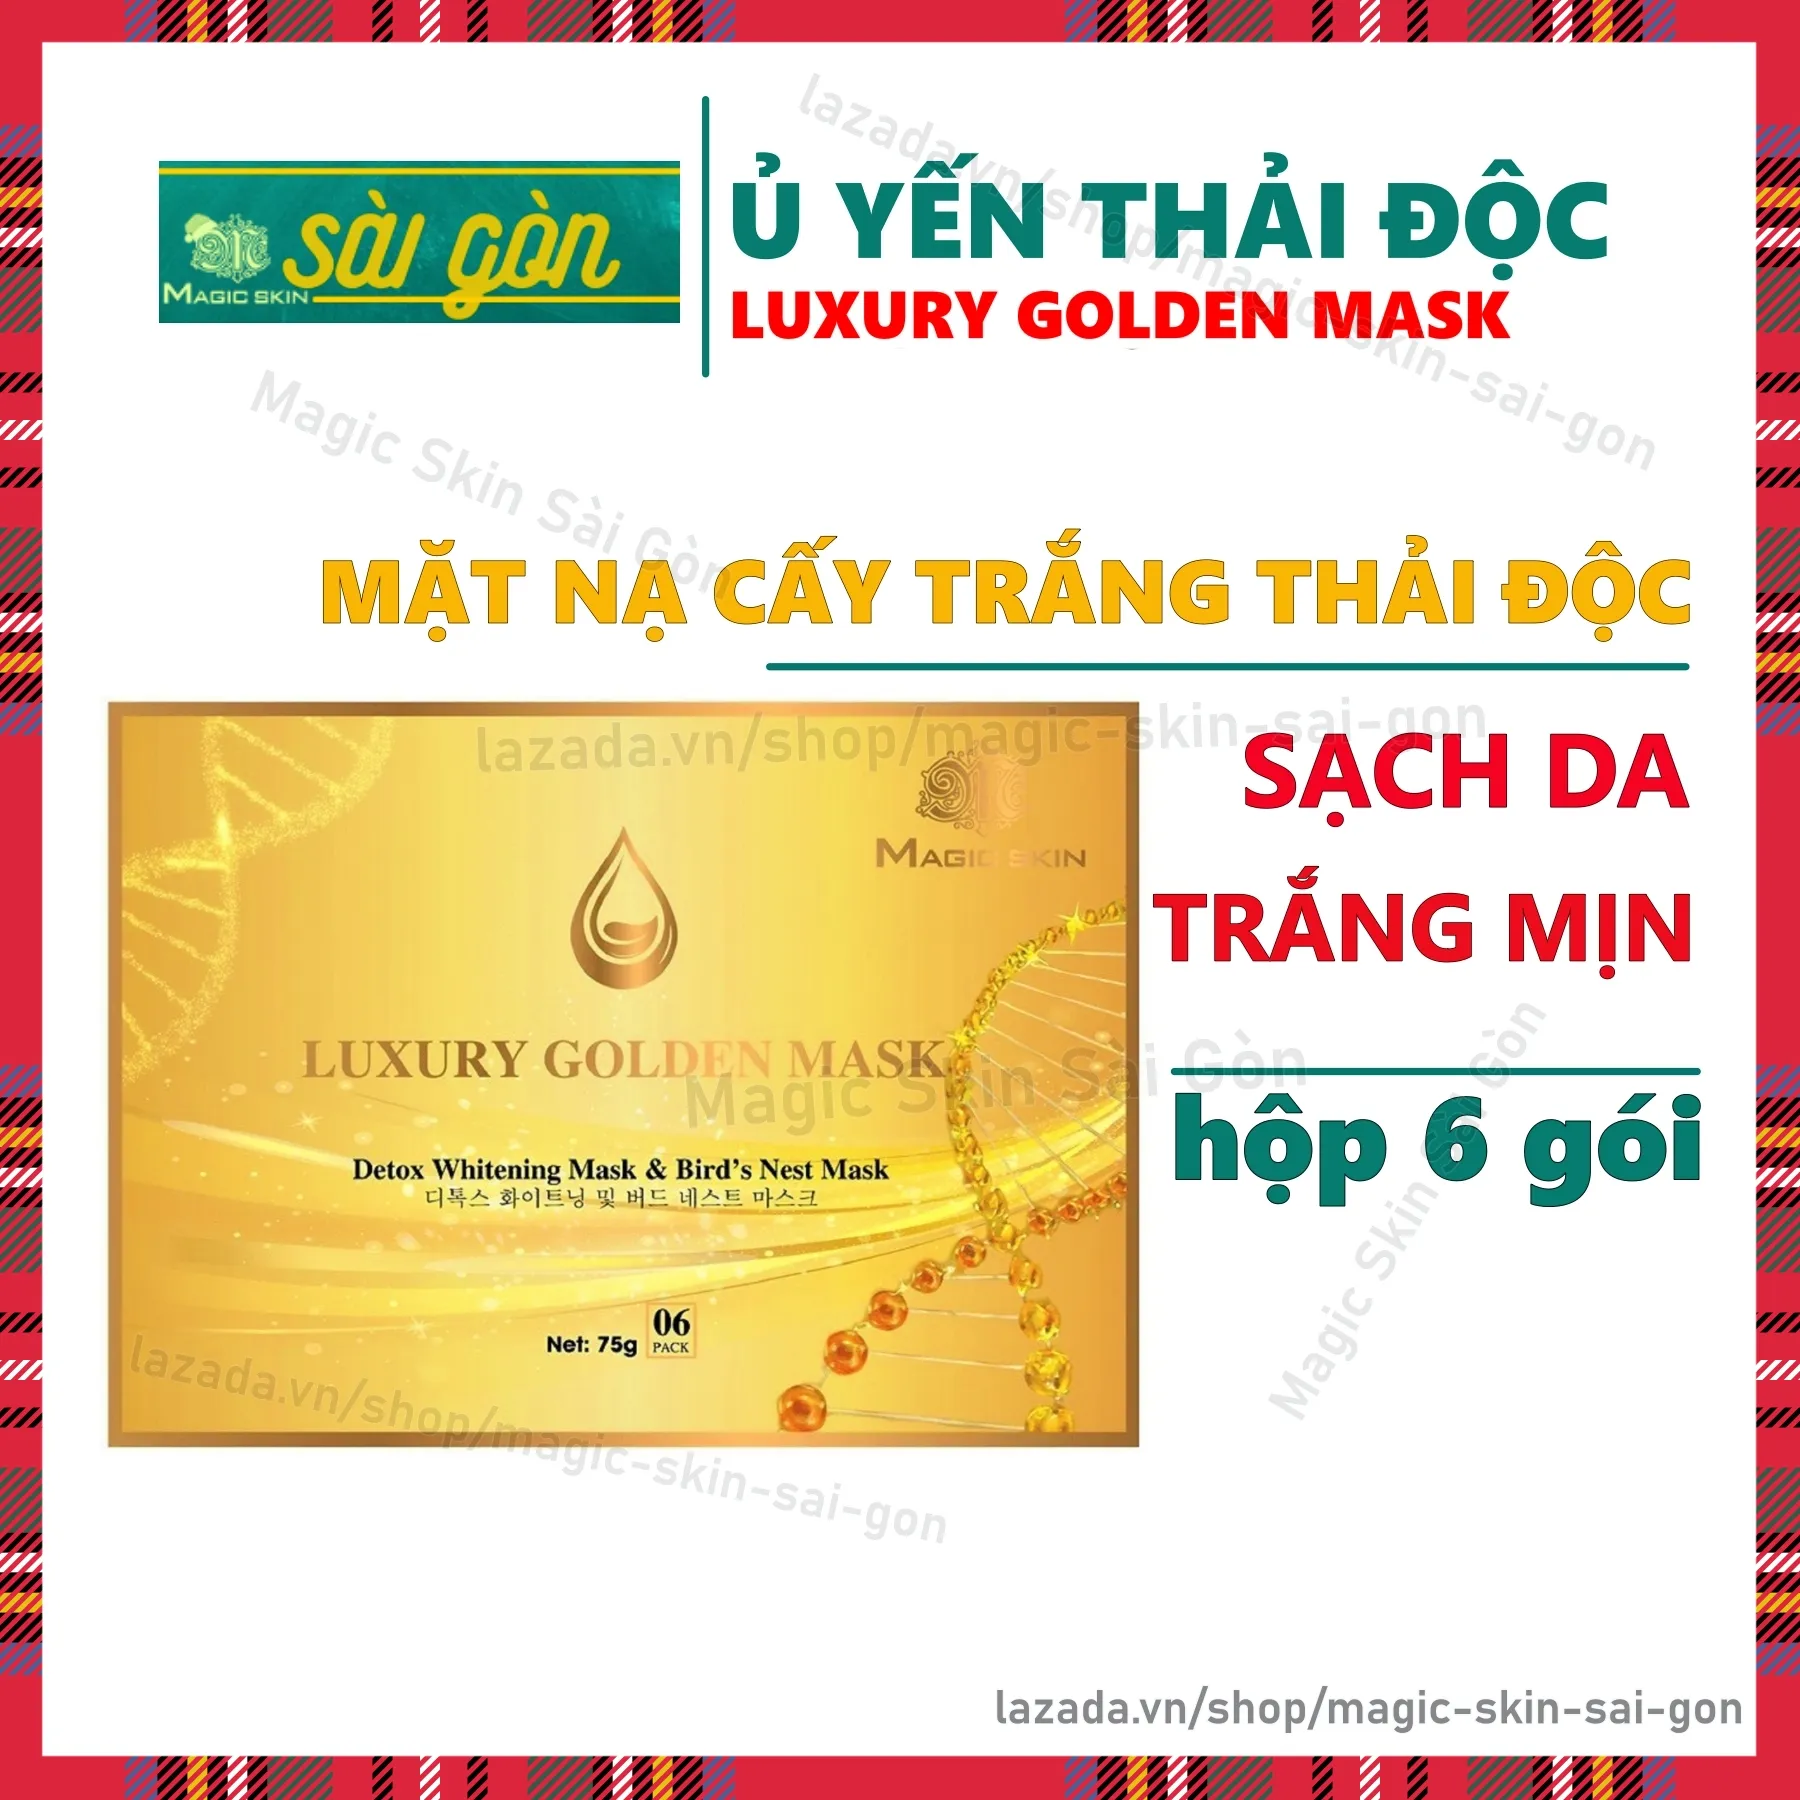 Ủ yến thải độc Luxury Golden Mask mặt nạ dưỡng da cấy trắng thải độc chiết xuất dịch yến MAGIC SKIN